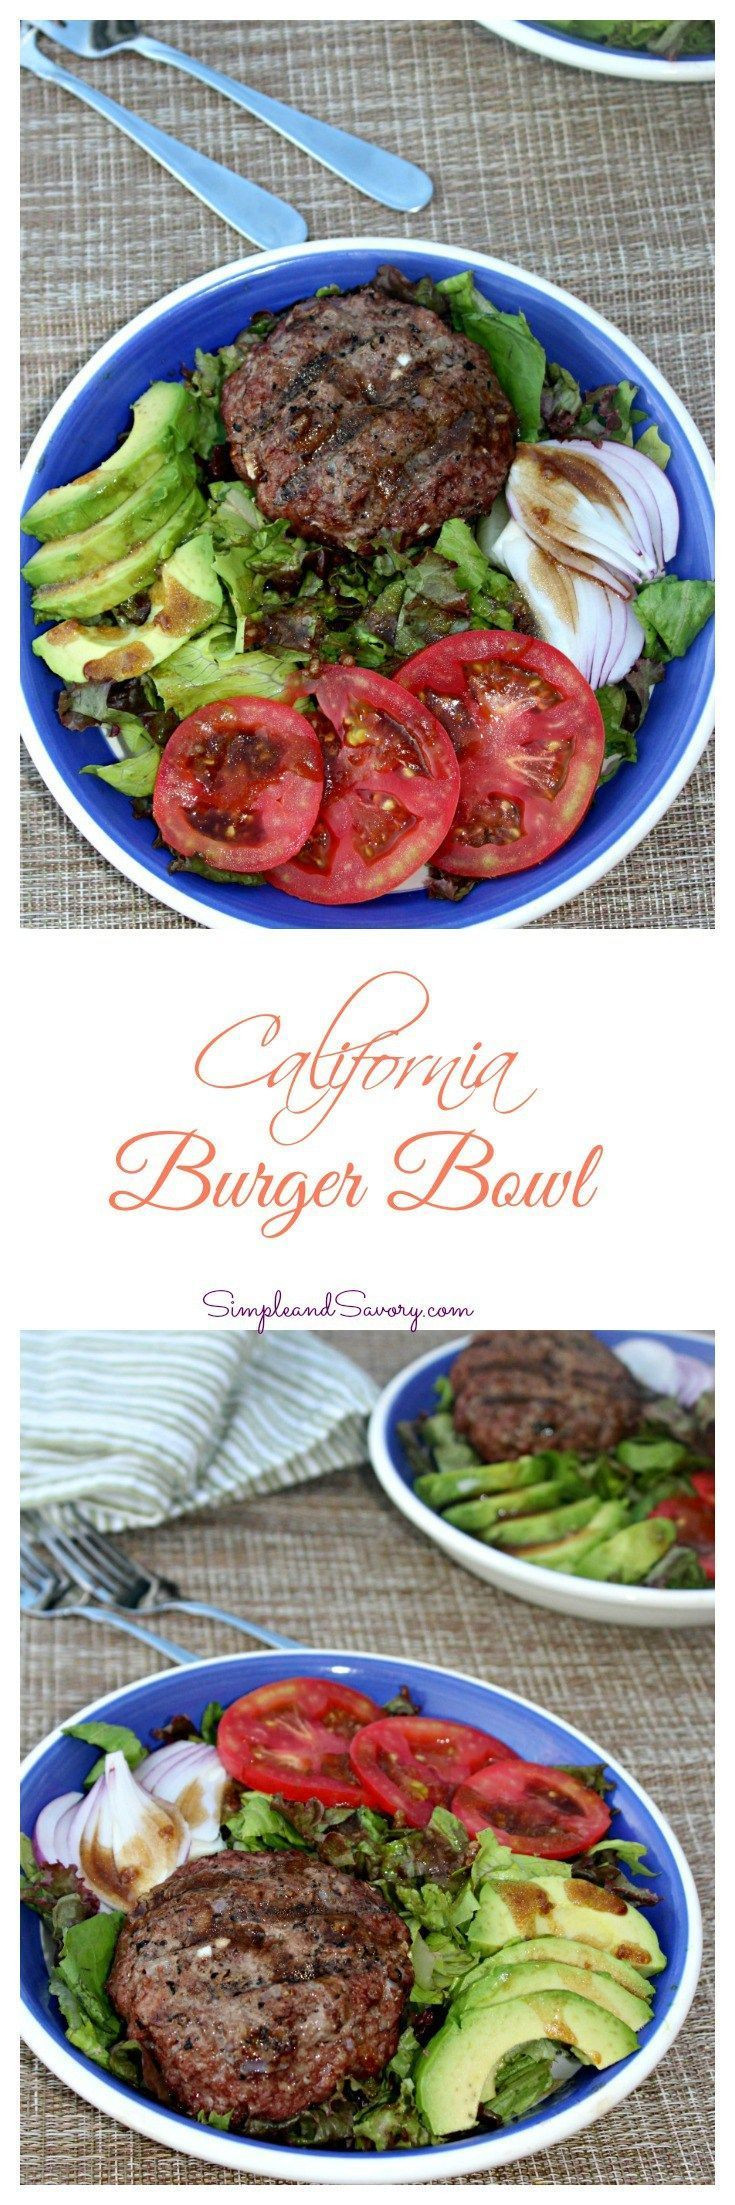 Low Fat Hamburger Recipes
 Best 25 Low carb hamburger recipes ideas on Pinterest